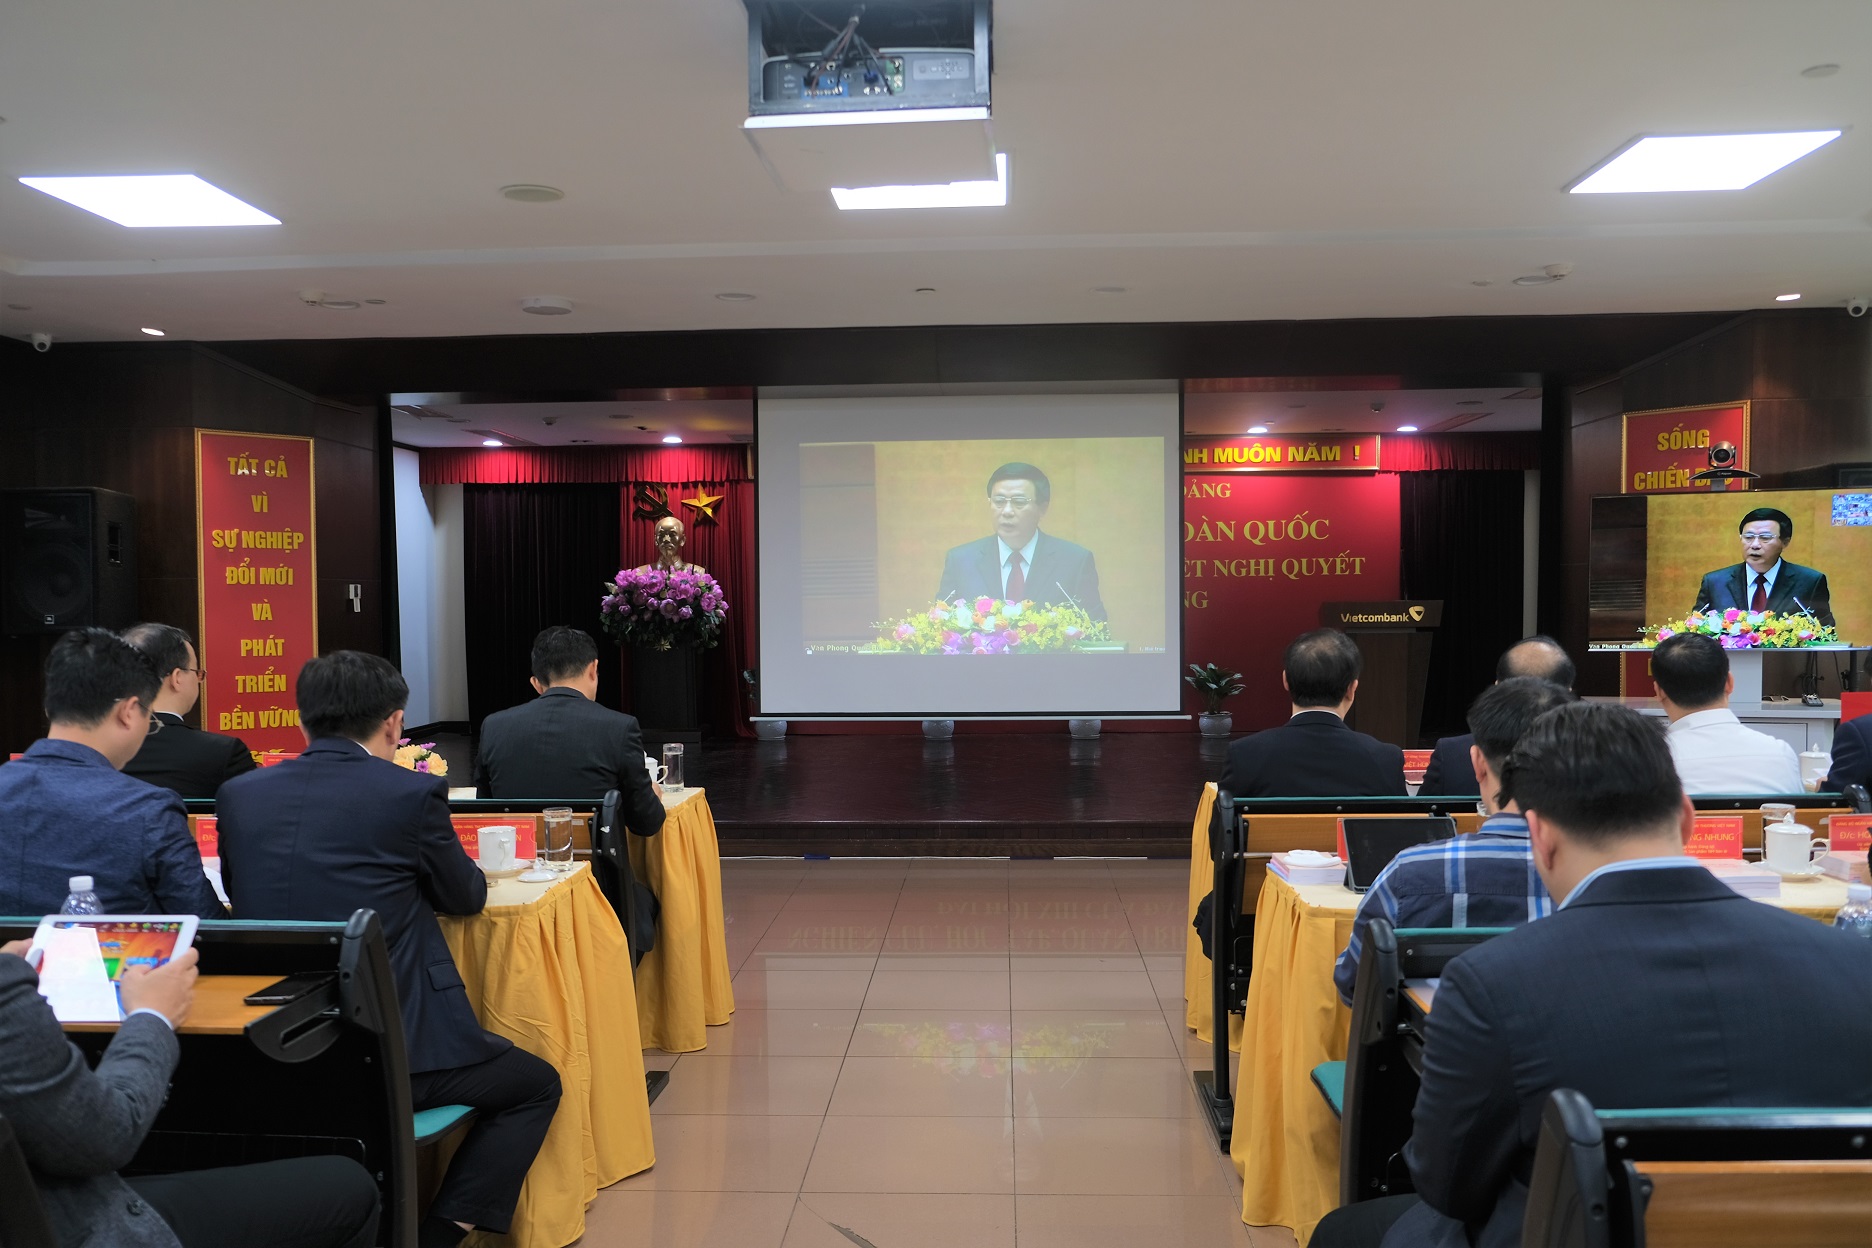 Đảng bộ Vietcombank tổ chức Hội nghị trực tuyến nghiên cứu, học tập, quán triệt Nghị quyết Đại hội đại biểu toàn quốc lần thứ XIII của Đảng